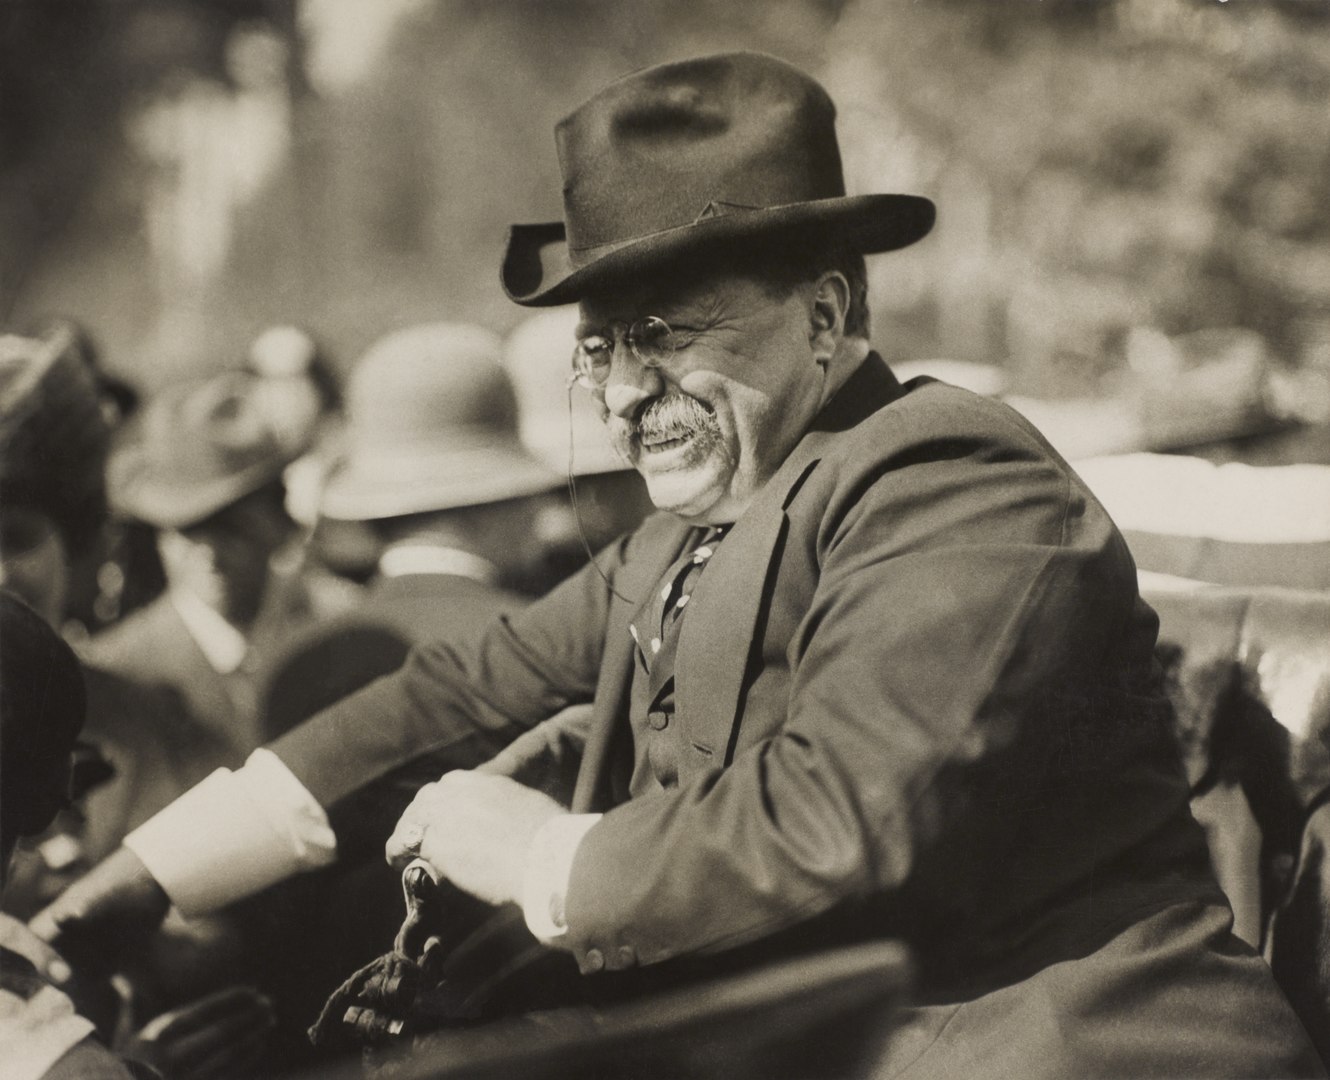 Theodore Roosevelt amerikai elnök